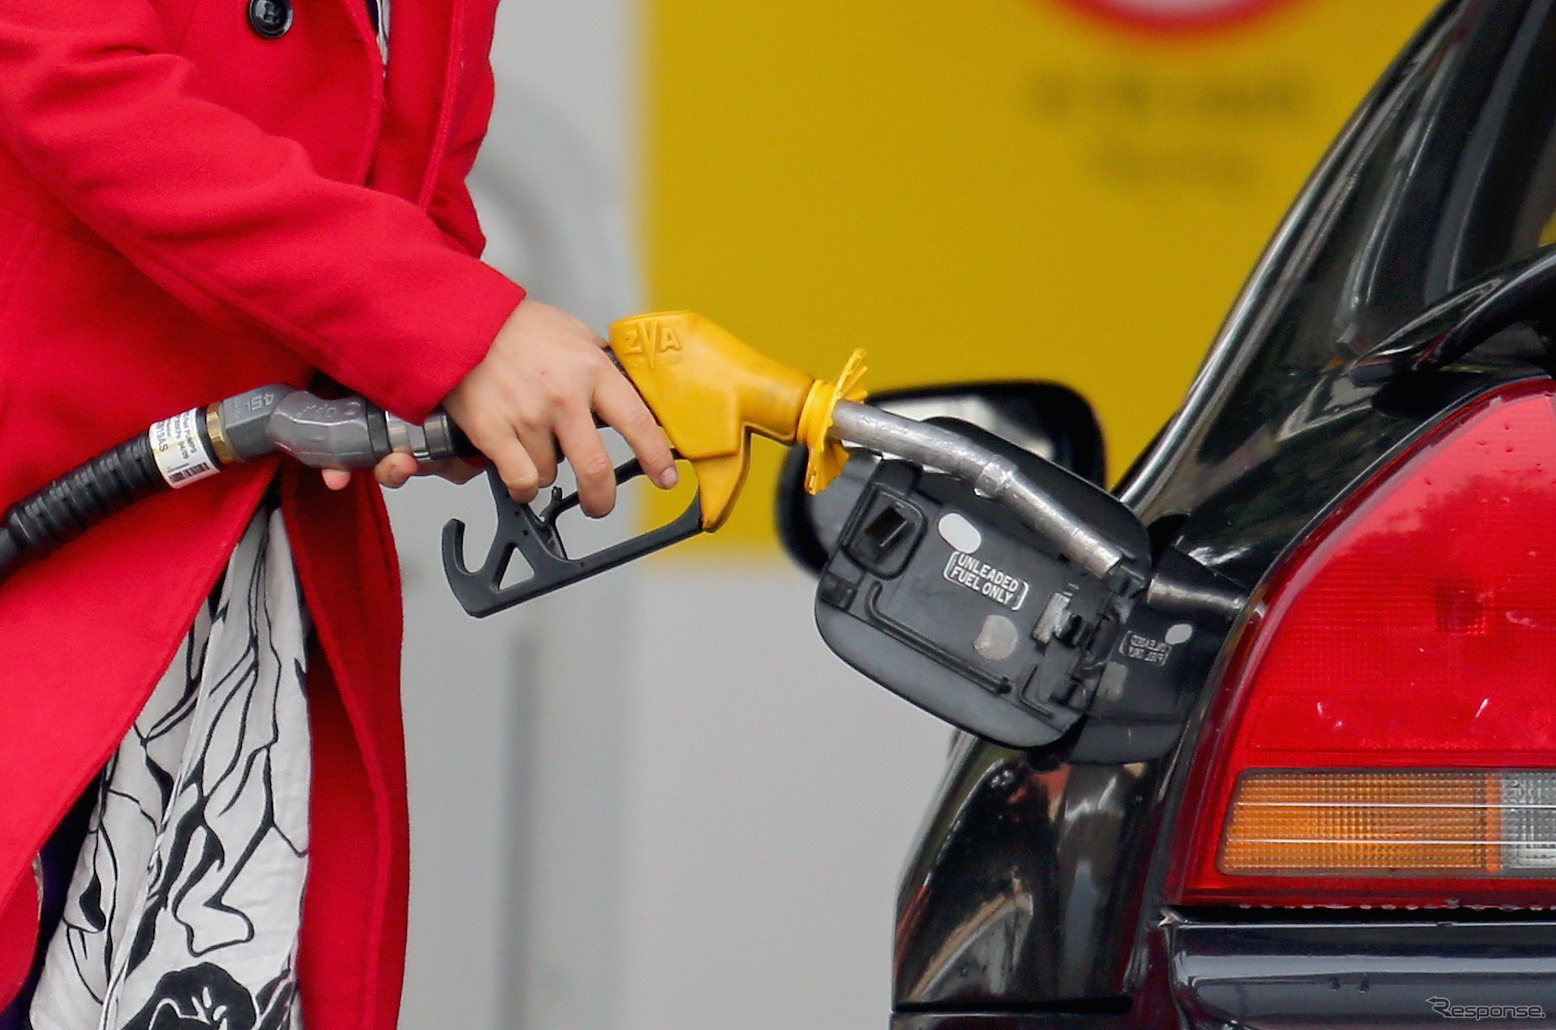 6月9日時点でのレギュラーガソリンの全国平均価格は前週から0.6円上昇し、1リットル当たり166.6円。